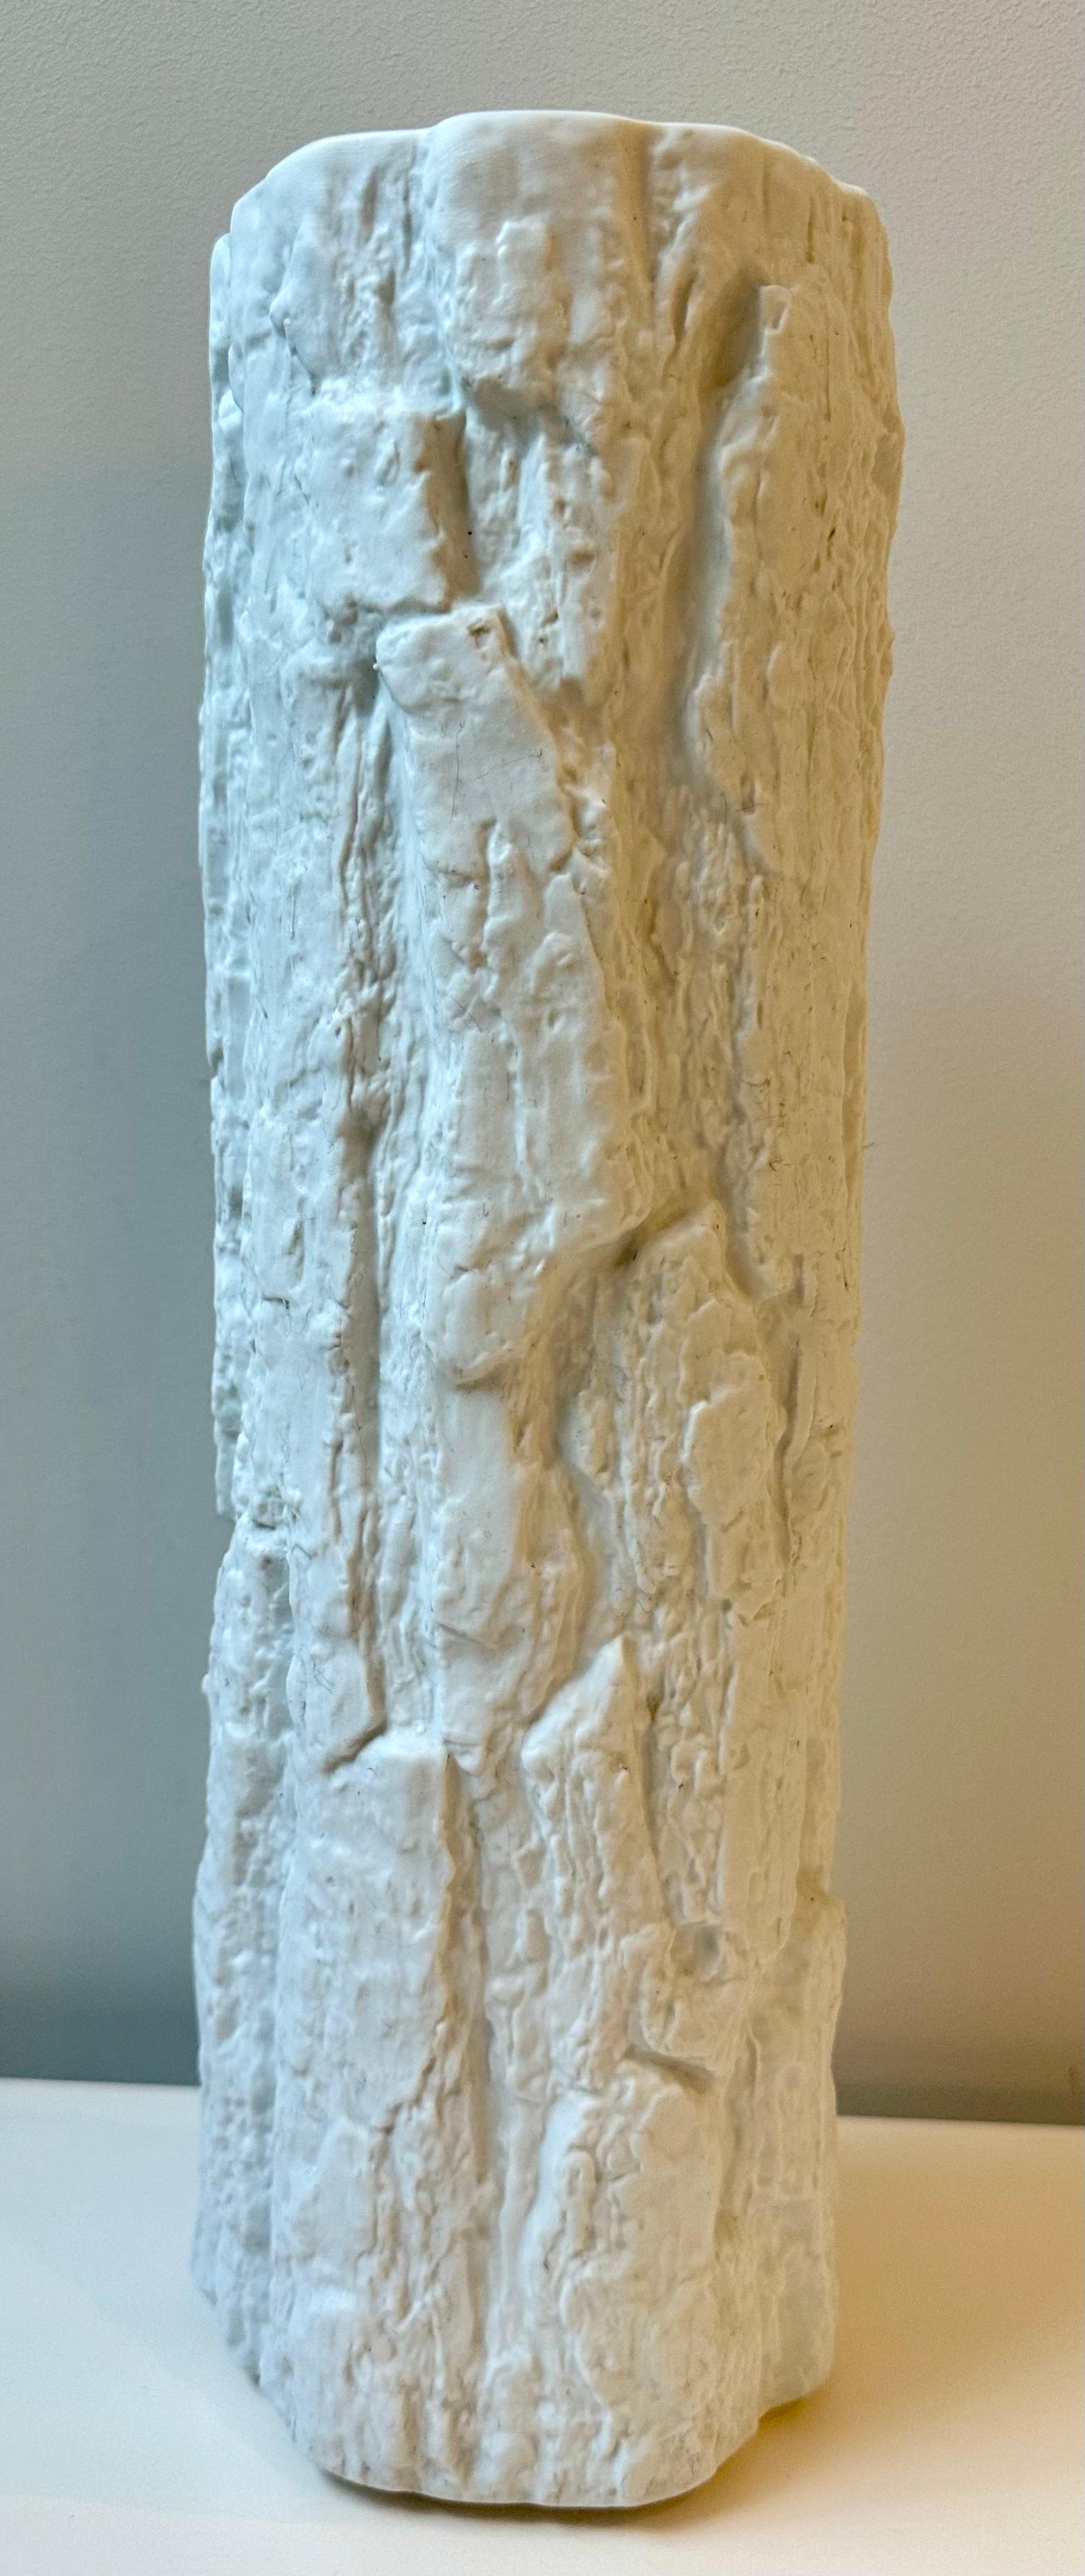 1970s large matt-white, bisque, tree-bark design, porcelain vase. Designed by Ernst Fenzi. Manufacturered by Bareuther & Co. AG, Waldsassen.  This porcelain vase with an OP Art tree-bark brutalist design.  

Manufacturer's Stamp On Base: Crown,